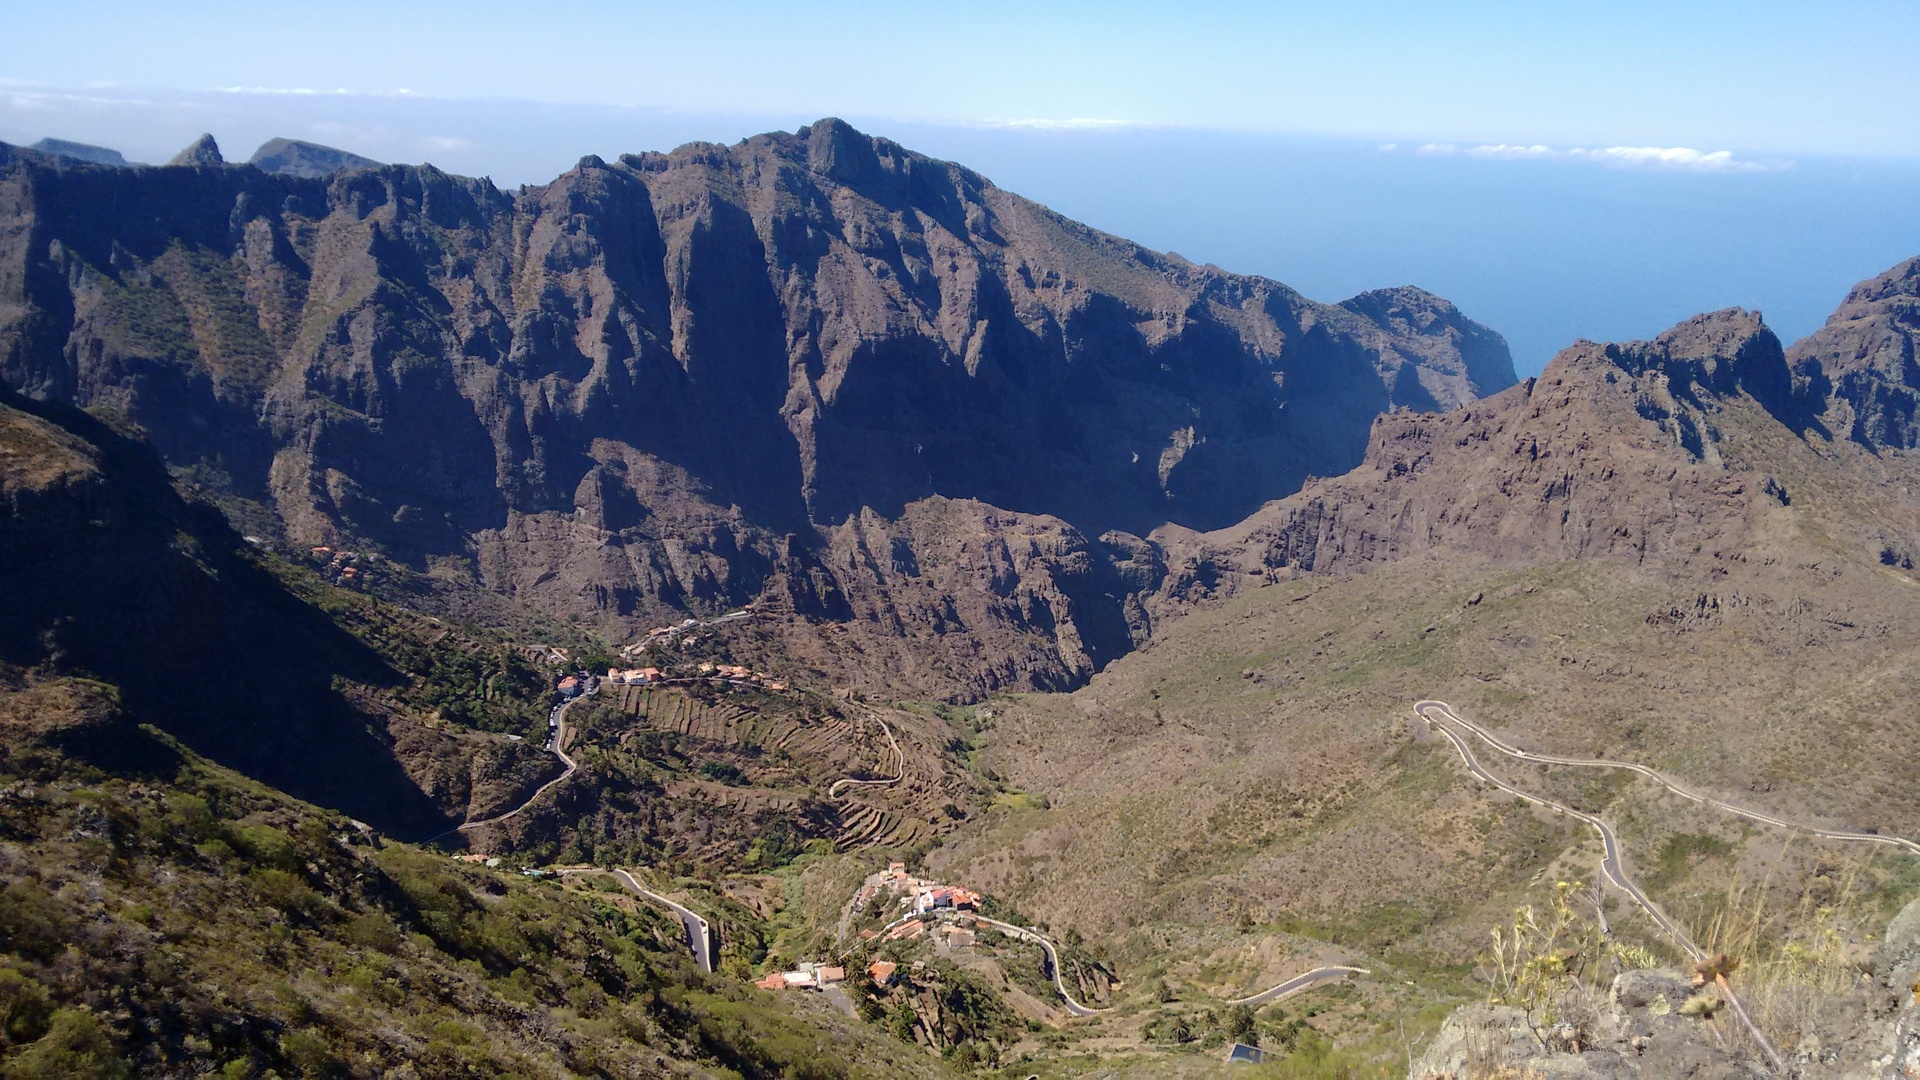 Barranco y caserío de Masca en Tenerife, ubicado en el macizo de Teno